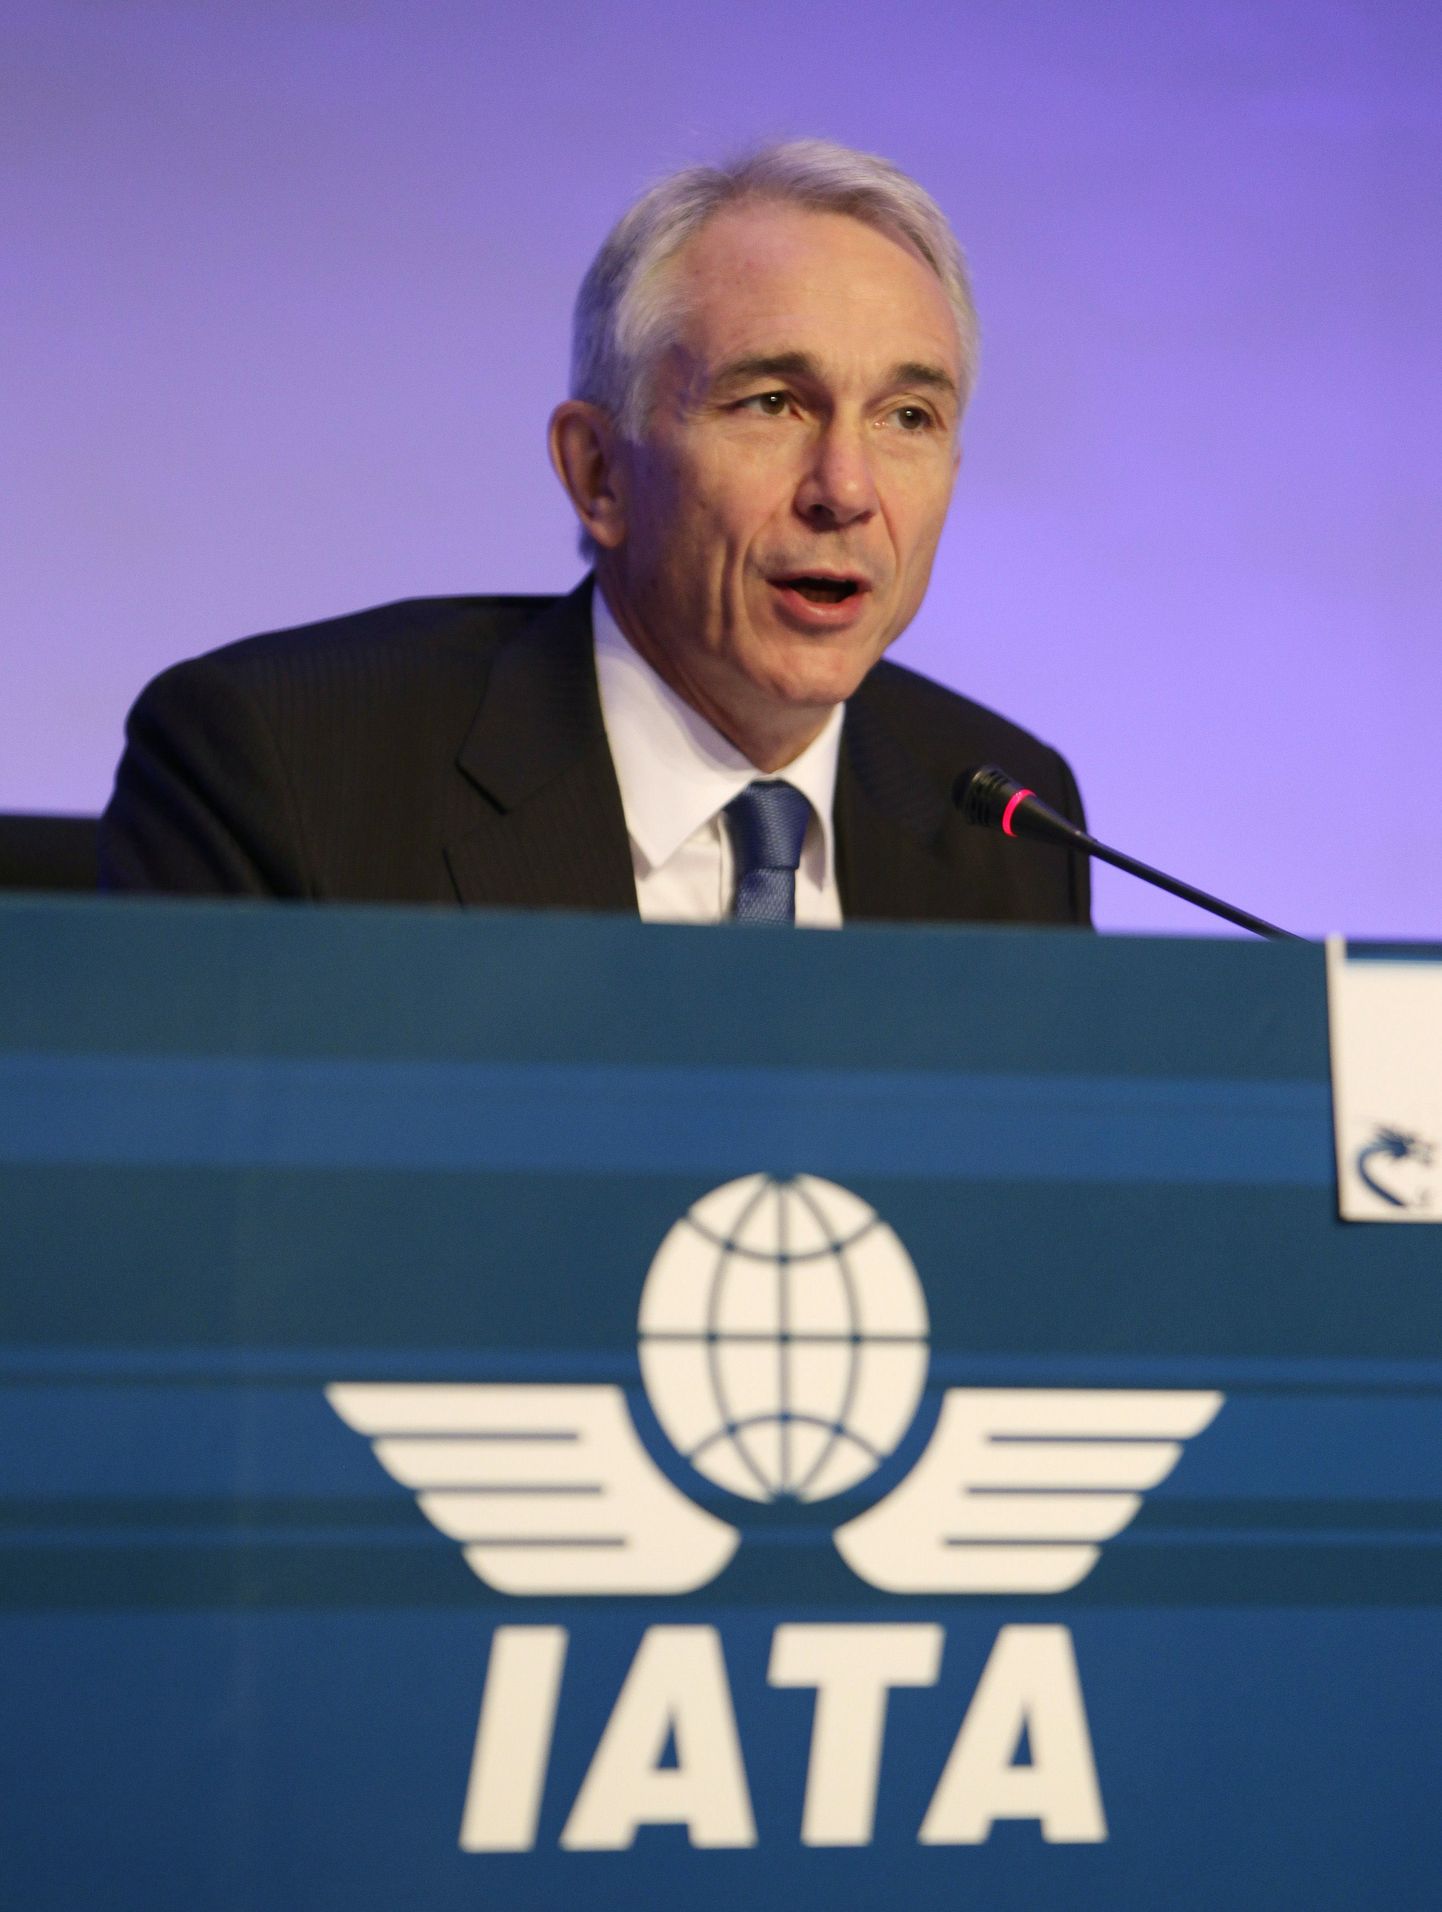 Rahvusvahelise Lennutranspordi Assotsiatsiooni (IATA)juhatuse esimees ja peadirektor Tony Tyler täna Pekingis ühenduse aastakonverentsil esinemas.